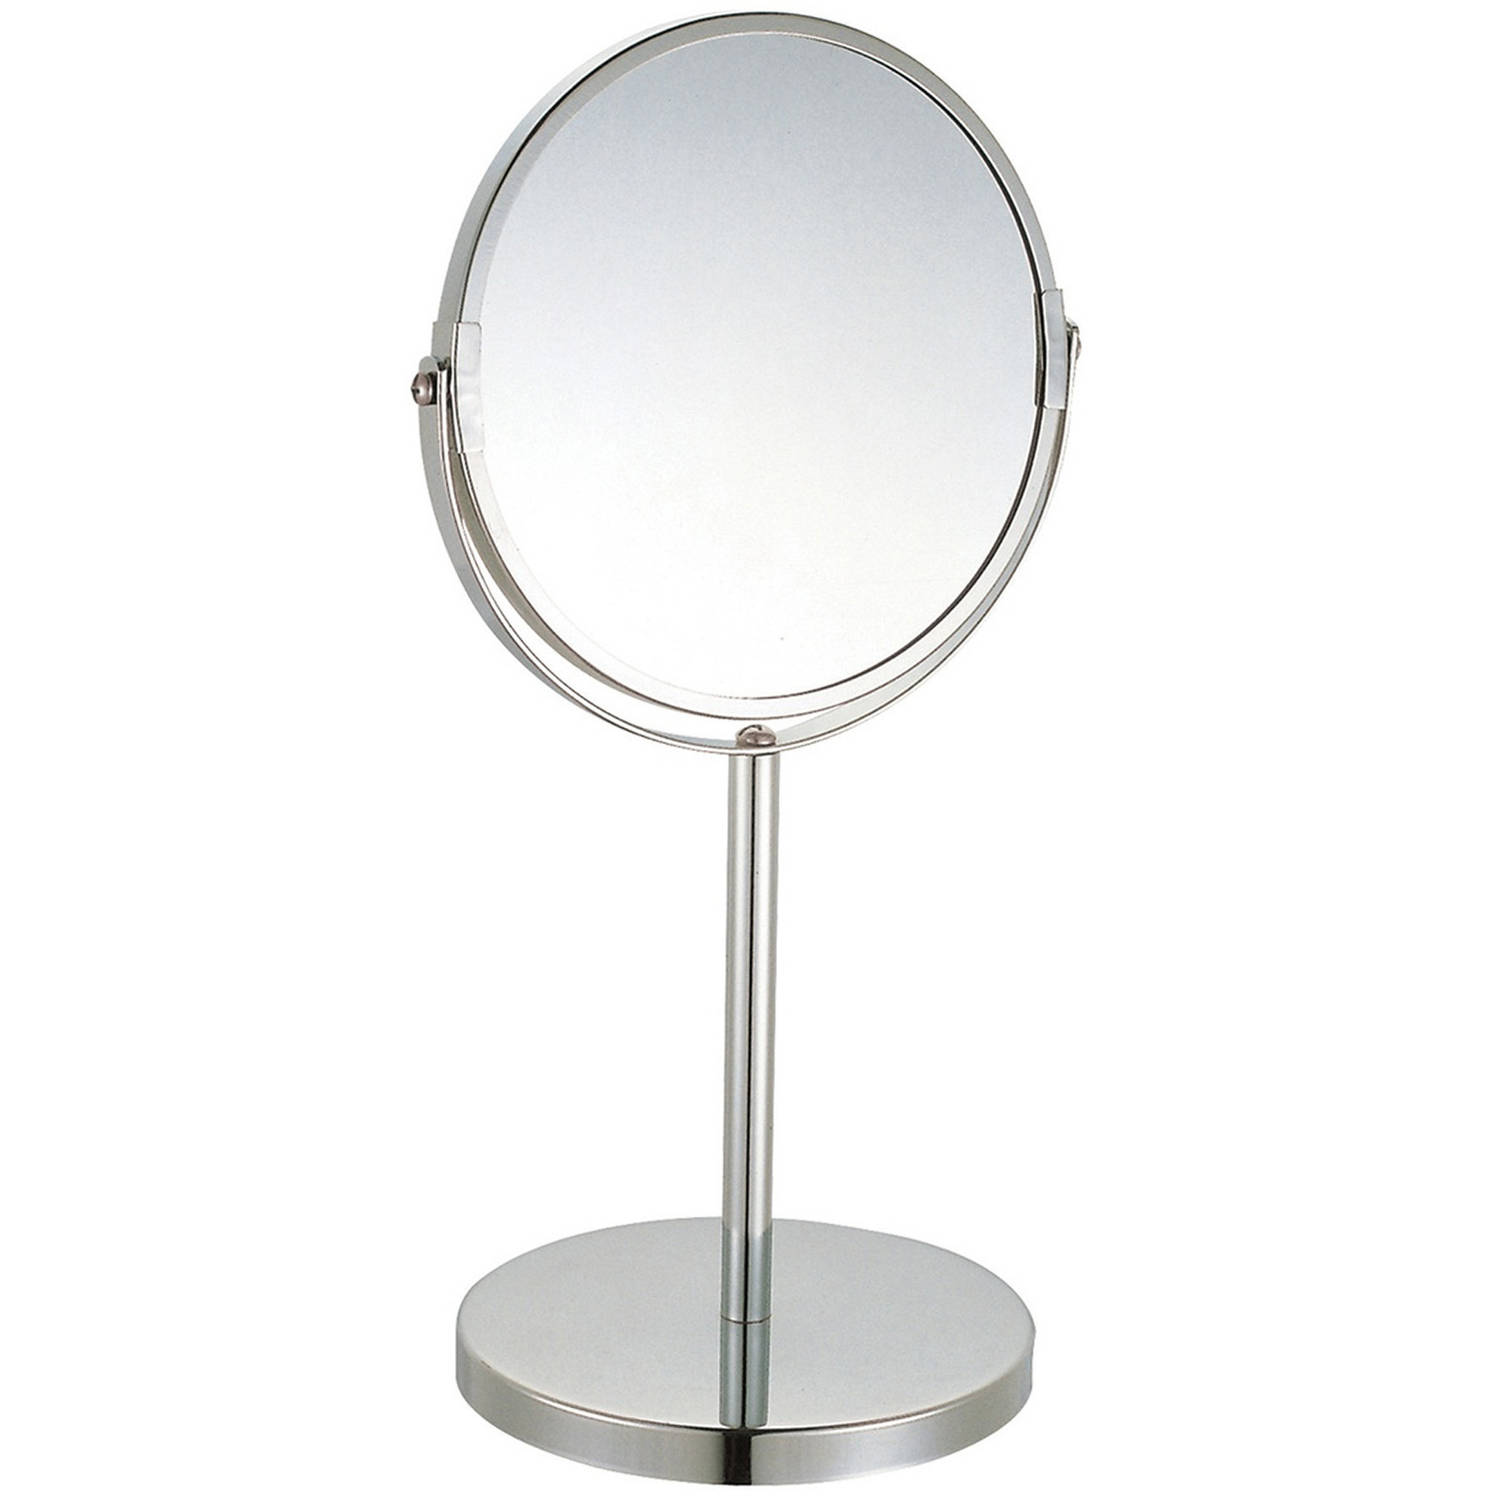 MSV Make-up spiegel 2-zijdig-3x vergrotend op stevige voet chrome zilver Dia 17 cm Make-up spiegeltj